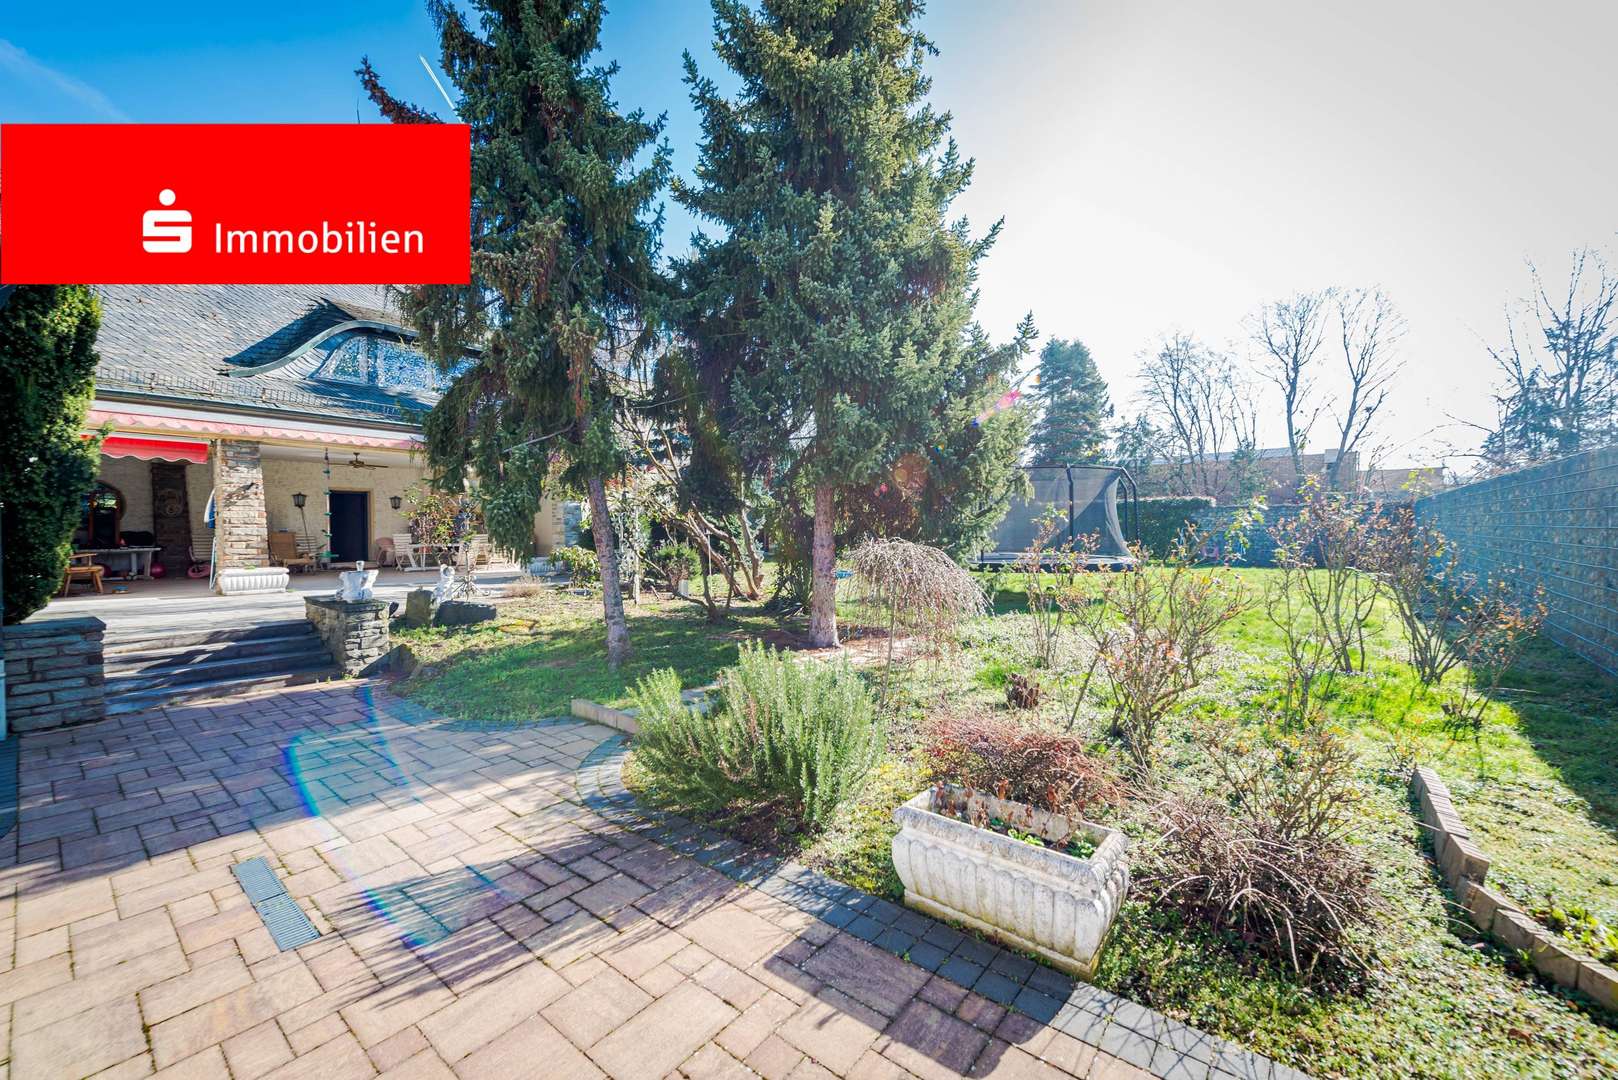 Terrasse/ Garten - Einfamilienhaus in 63179 Obertshausen mit 384m² kaufen